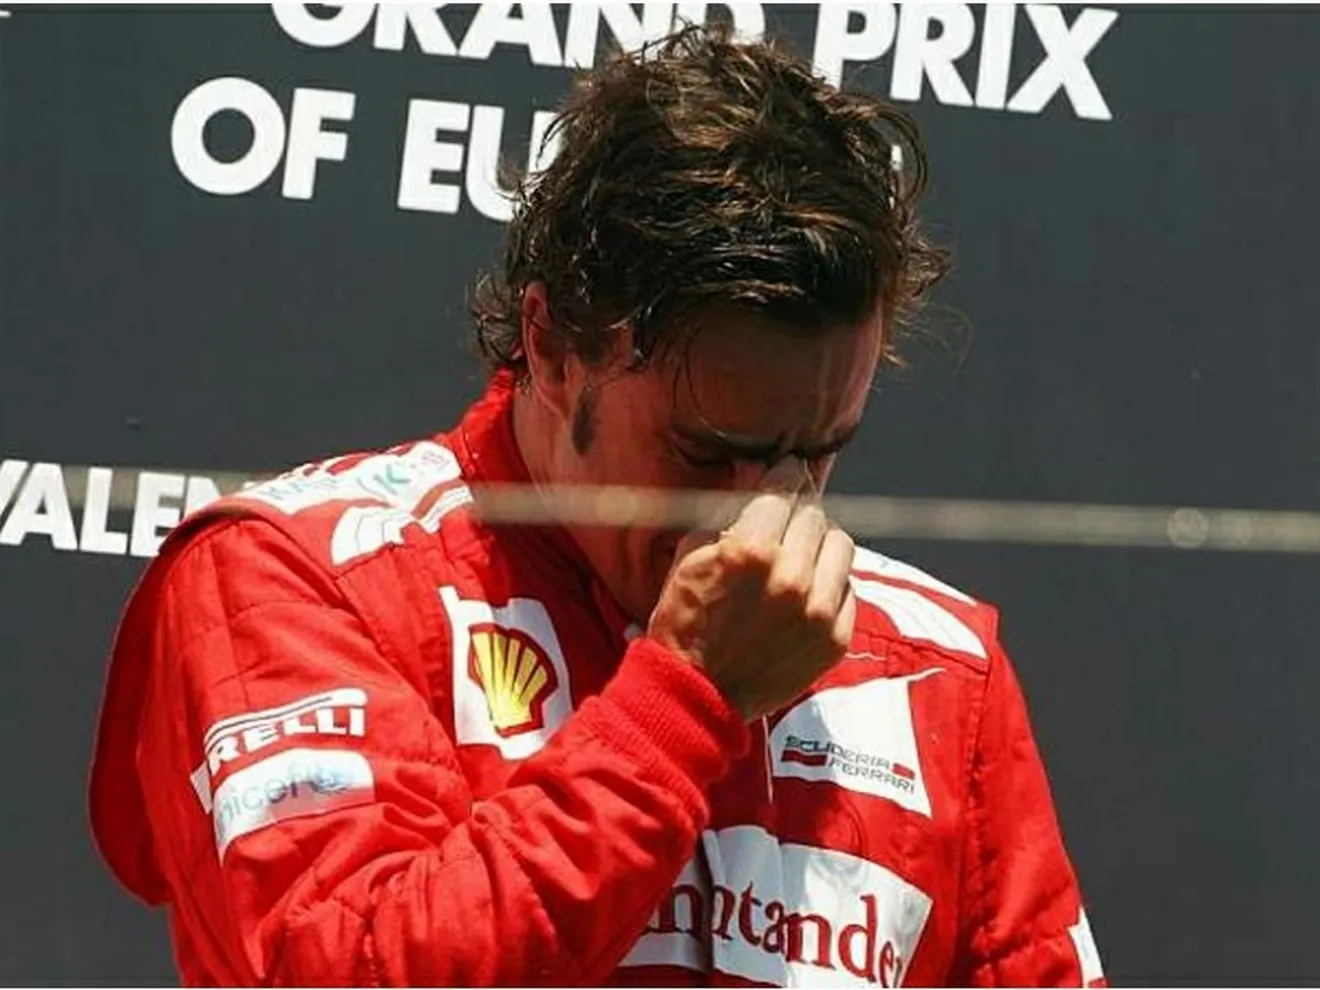 Fernando Alonso en Valencia: Emotiva victoria y todos le felicitan